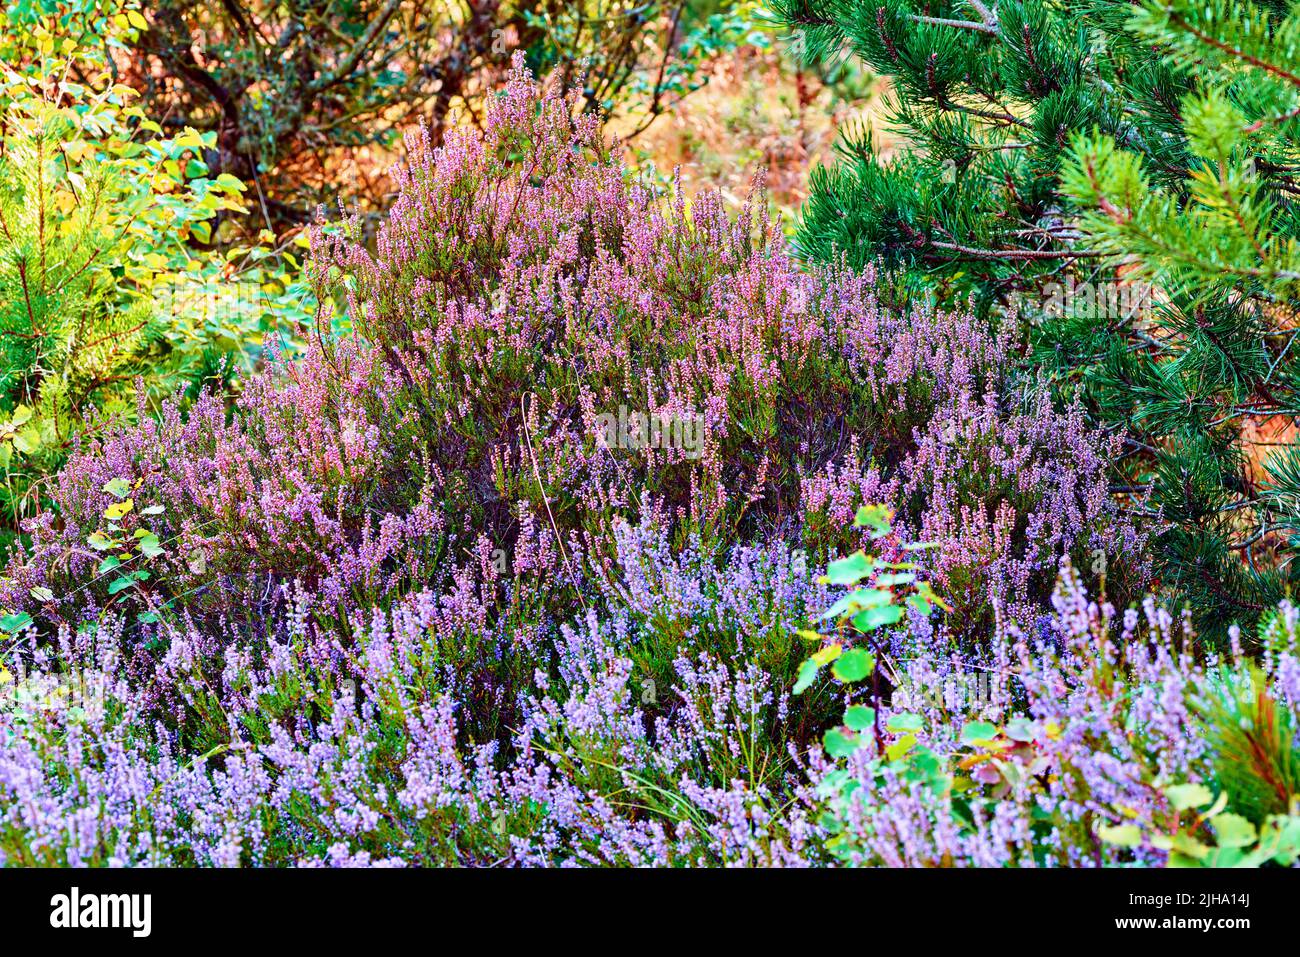 Heather che cresce in una foresta selvaggia. Bellissimo paesaggio di fiori viola fiorente nella natura circondato da pini. Vista panoramica del lussureggiante fogliame Foto Stock